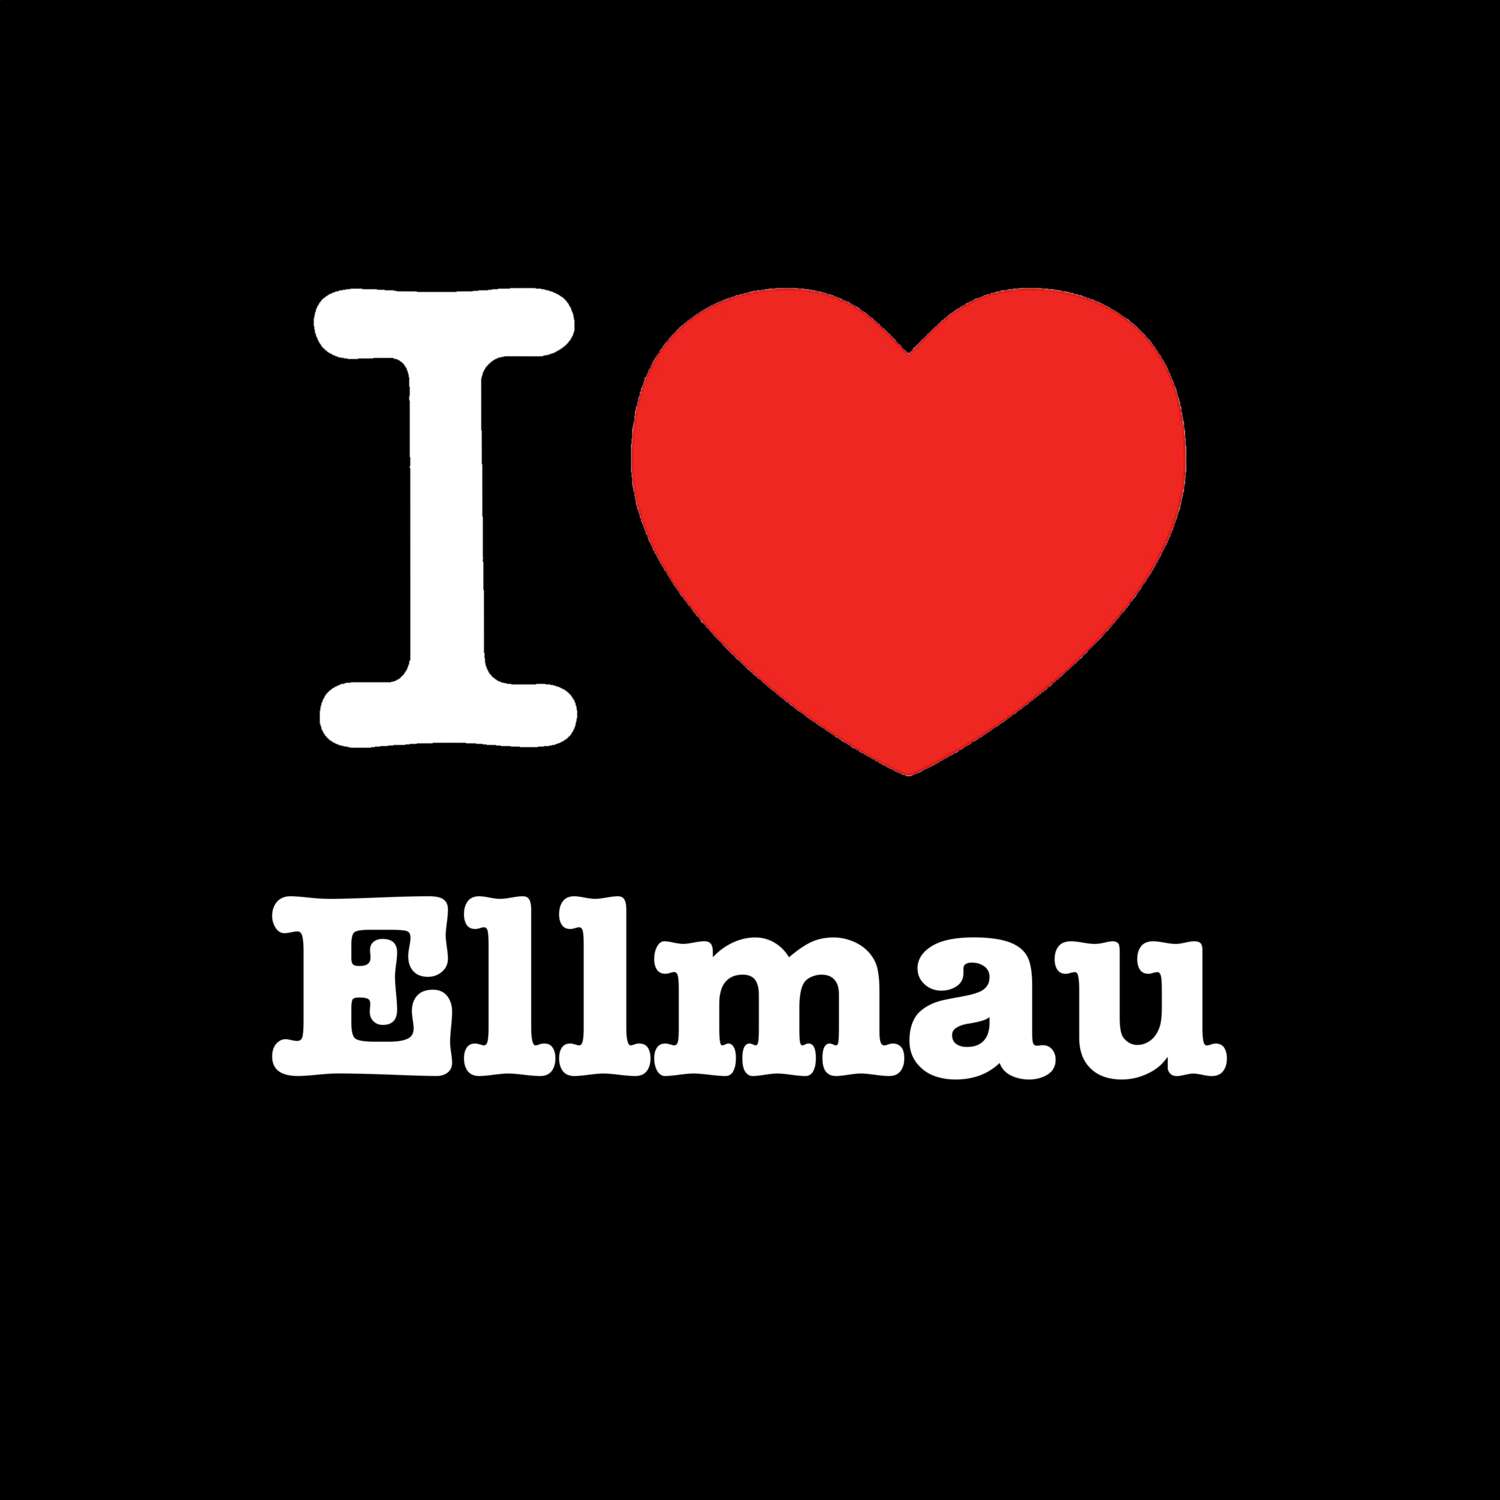 Ellmau T-Shirt »I love«